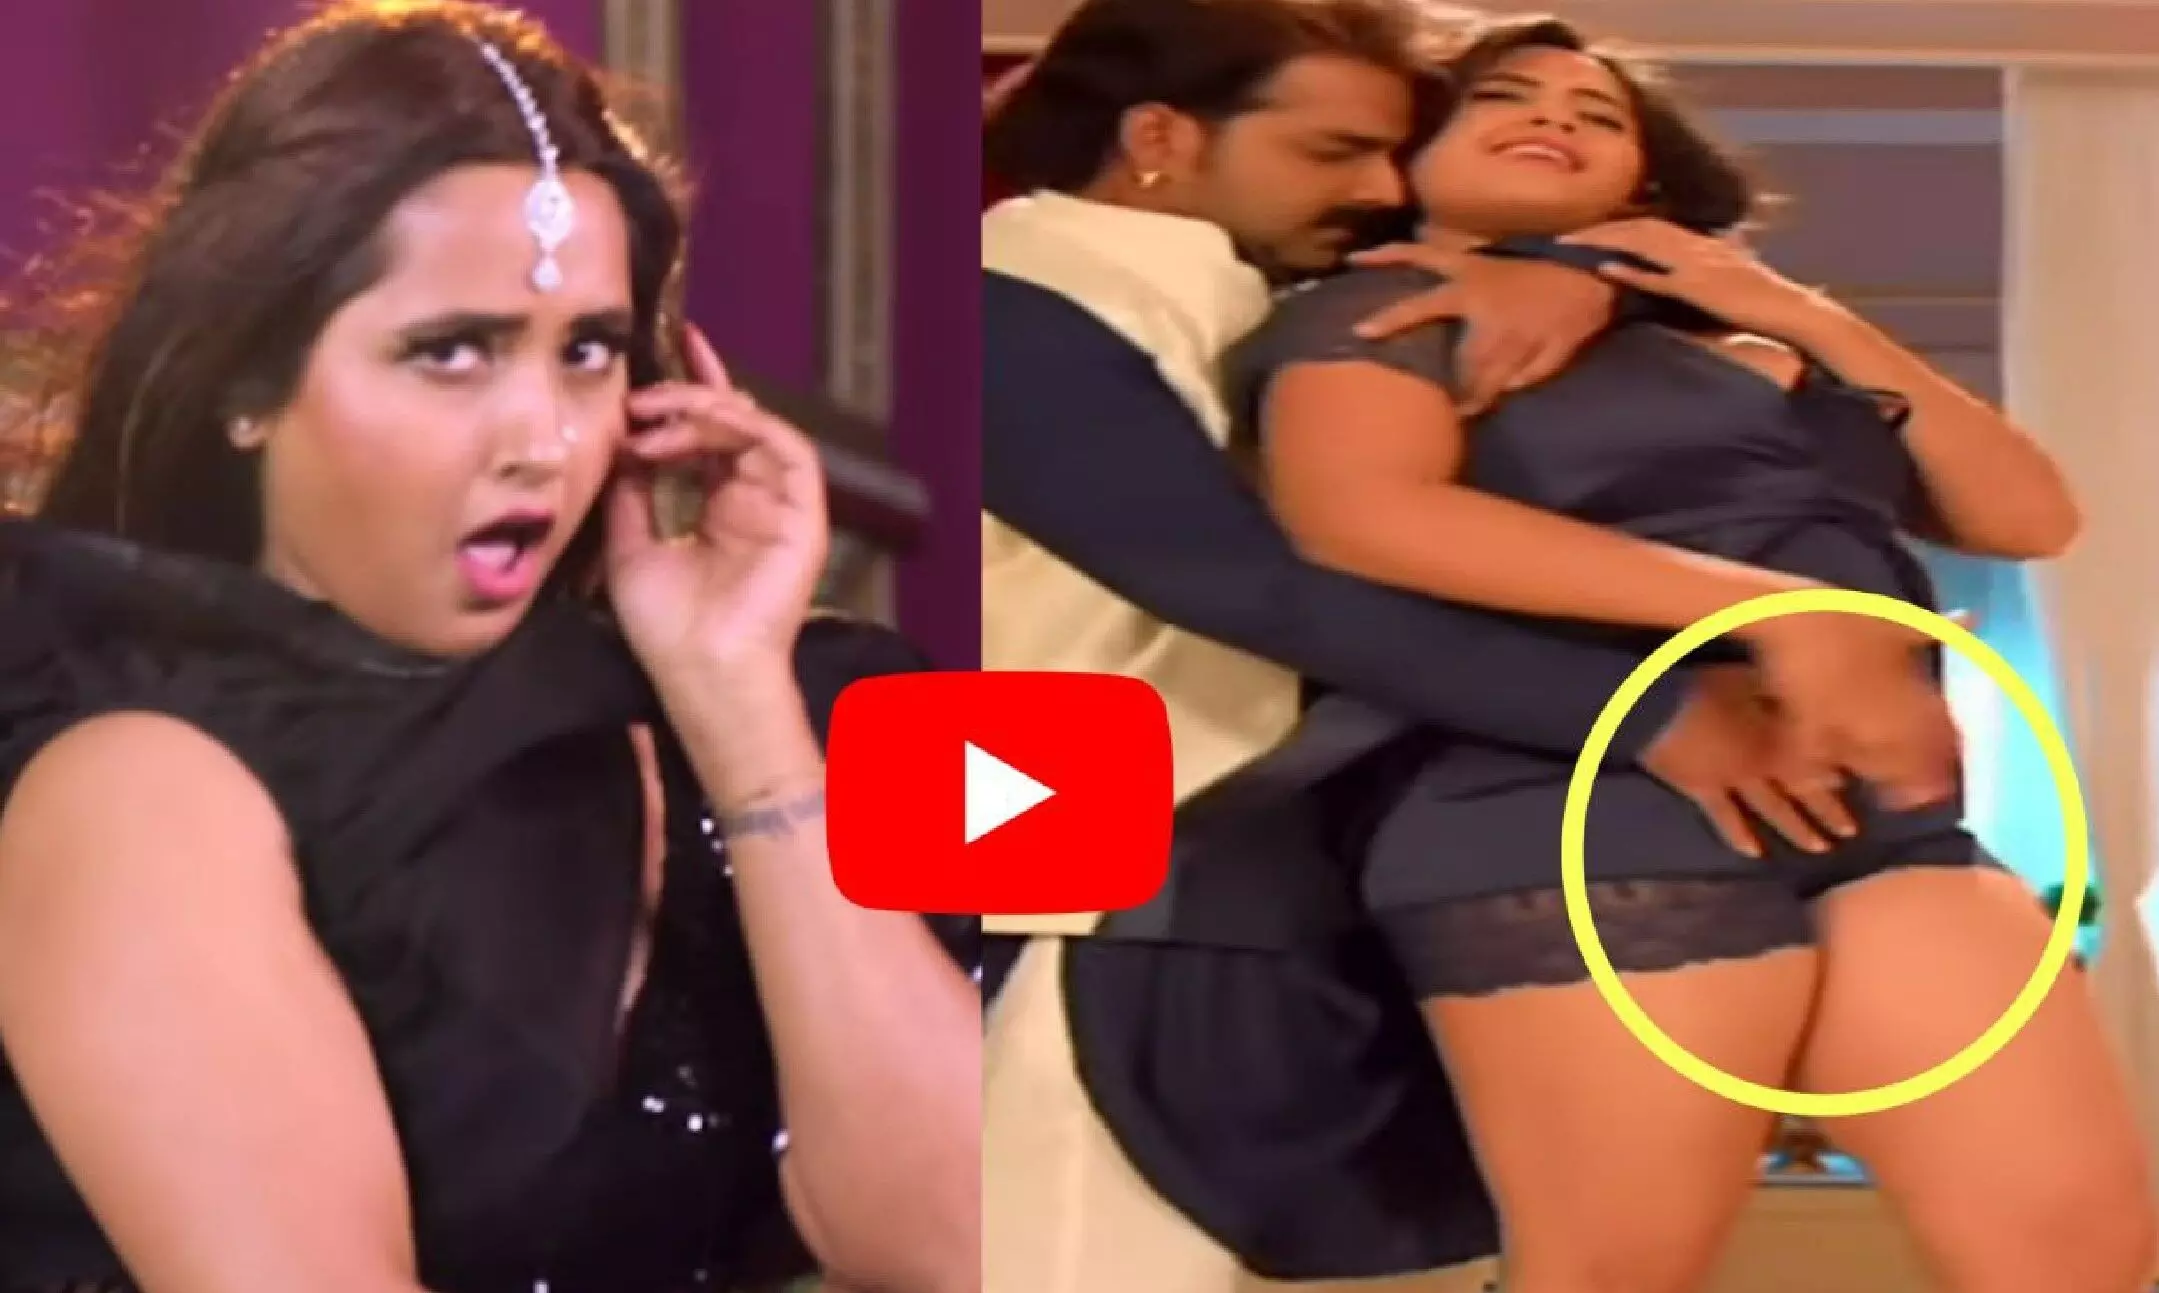 Kajal Ka Bhojpuri Sex - Kajal Raghwani HOT Video: à¤•à¤¾à¤œà¤² à¤°à¤¾à¤˜à¤µà¤¾à¤¨à¥€ à¤•à¤¾ à¤¹à¥‰à¤Ÿ à¤µà¥€à¤¡à¤¿à¤¯à¥‹ à¤¦à¥‡à¤– à¤¦à¥€à¤µà¤¾à¤¨à¥‡ à¤¹à¥‹ à¤—à¤ à¤«à¥ˆà¤¨à¥à¤¸  | Kajal Raghwani HOT Video: Fans went crazy after watching Kajal Raghwani's  hot video